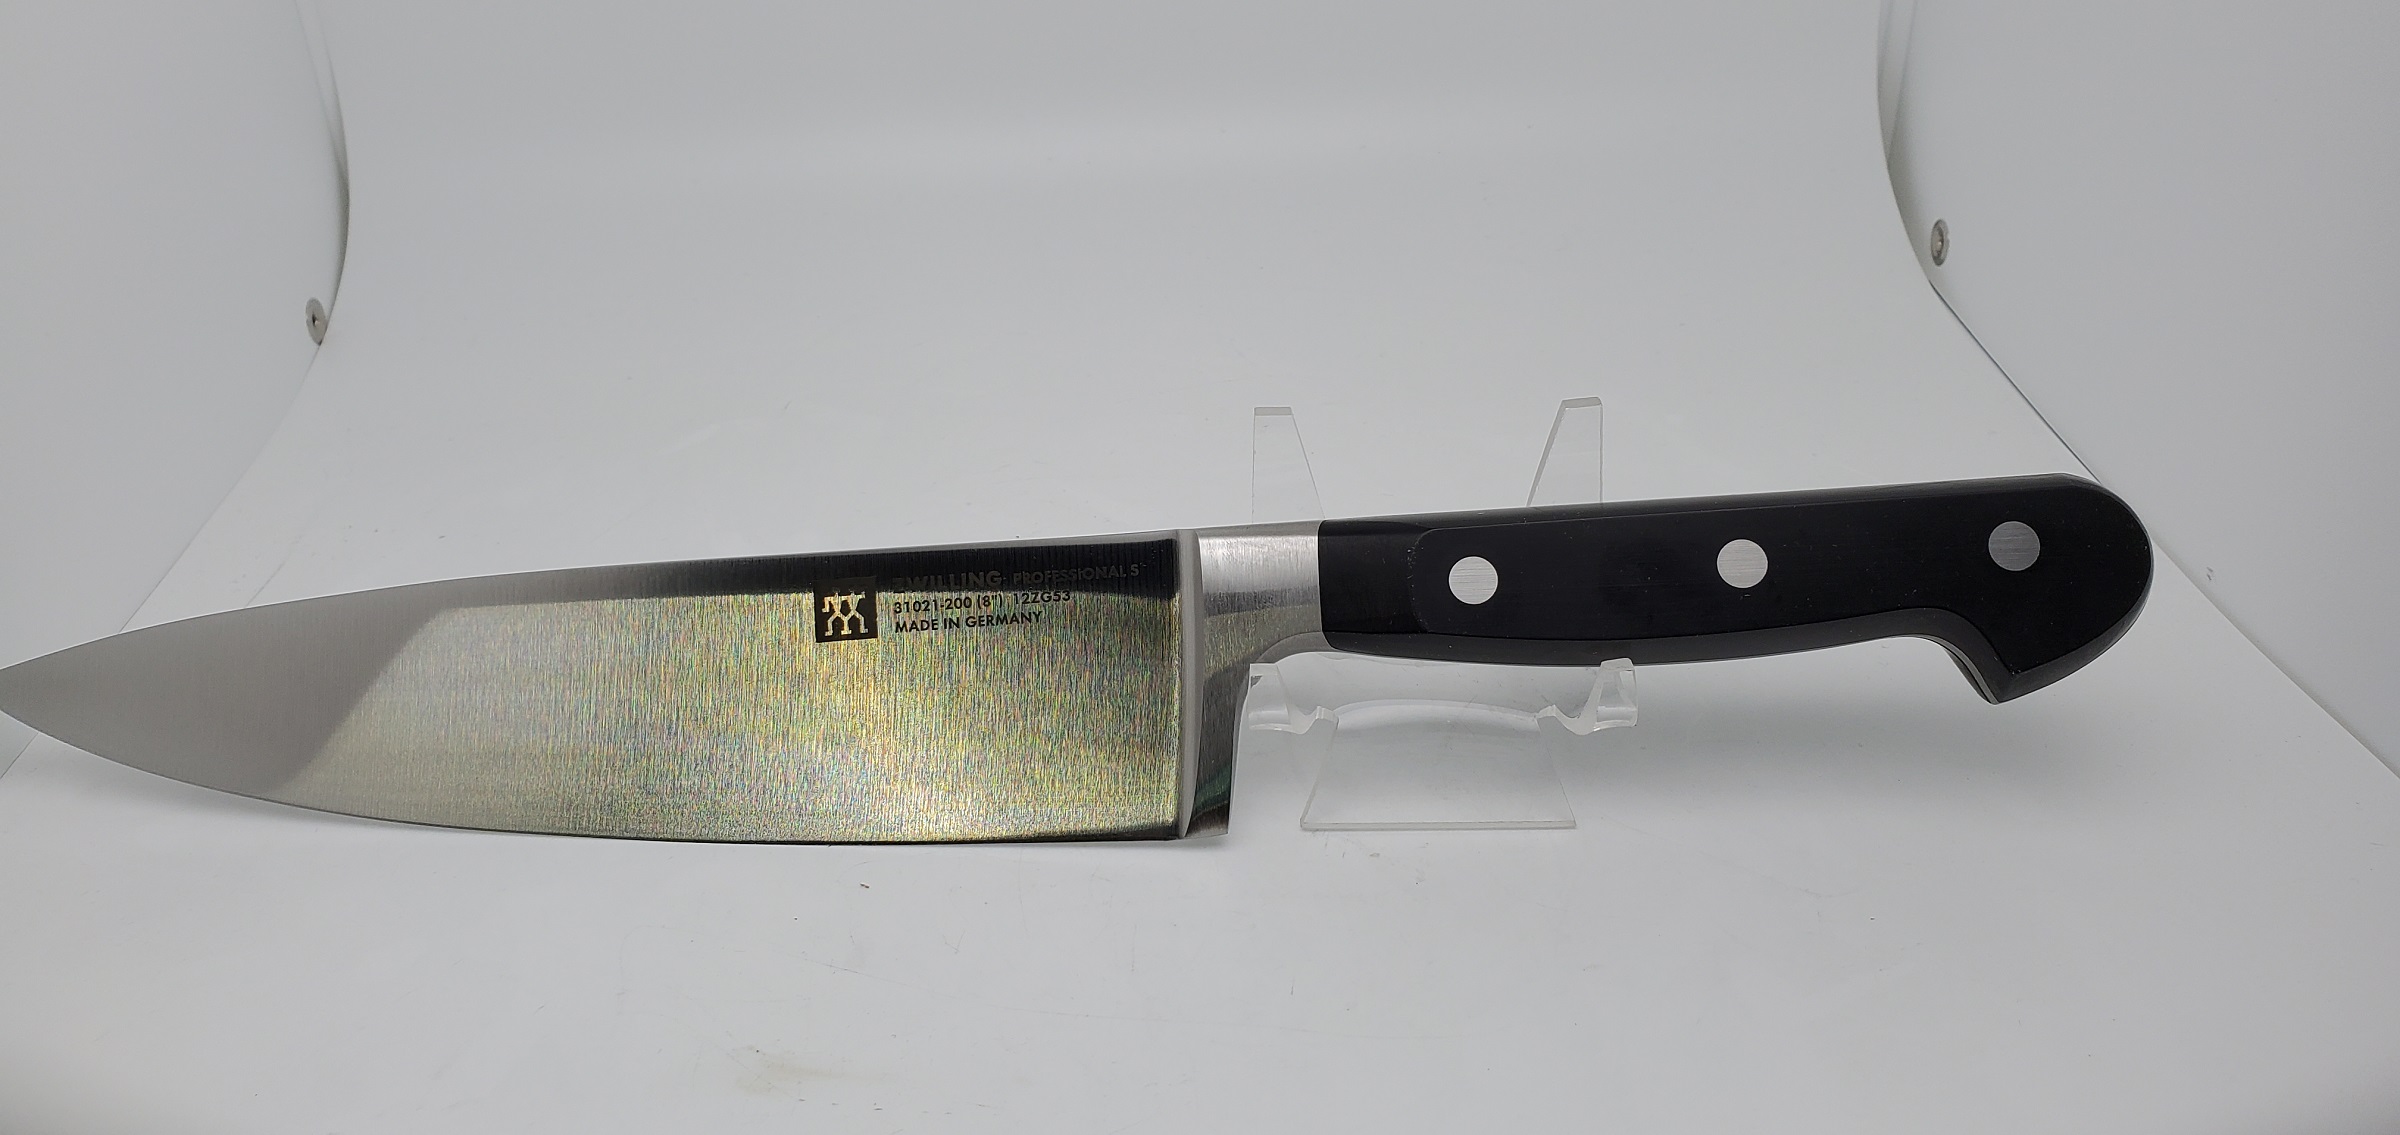 HK31020-103 Pro S Paring Knife 4